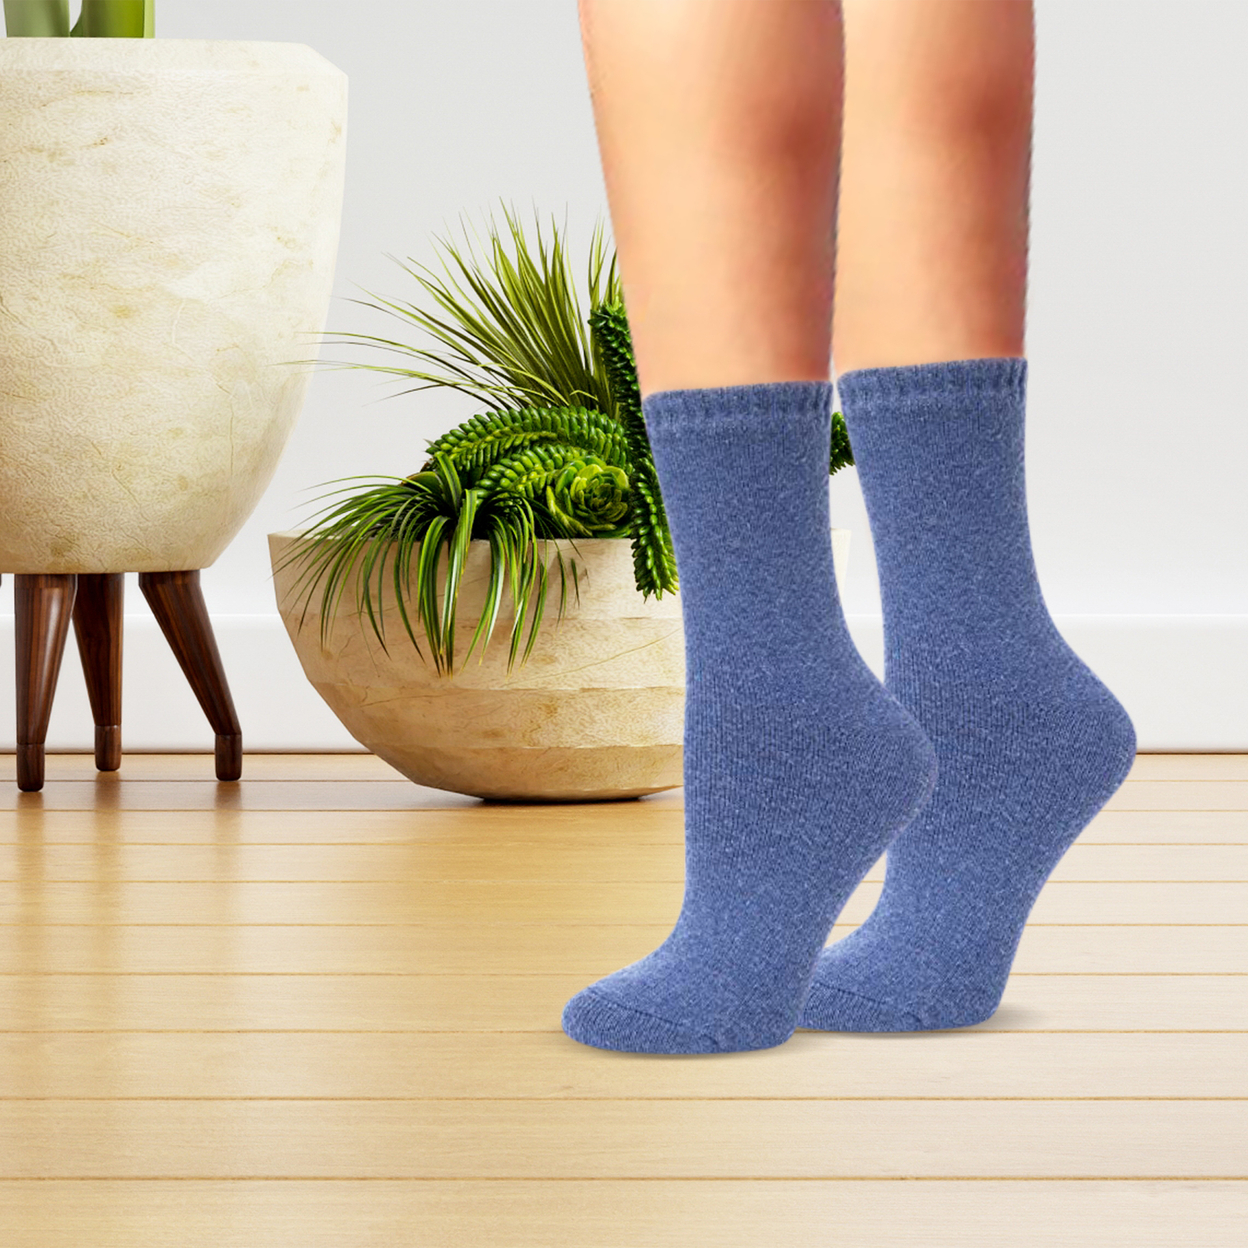 2-Pairs: Women's Warm Thick Merino Lamb Wool Winter Thermal Socks